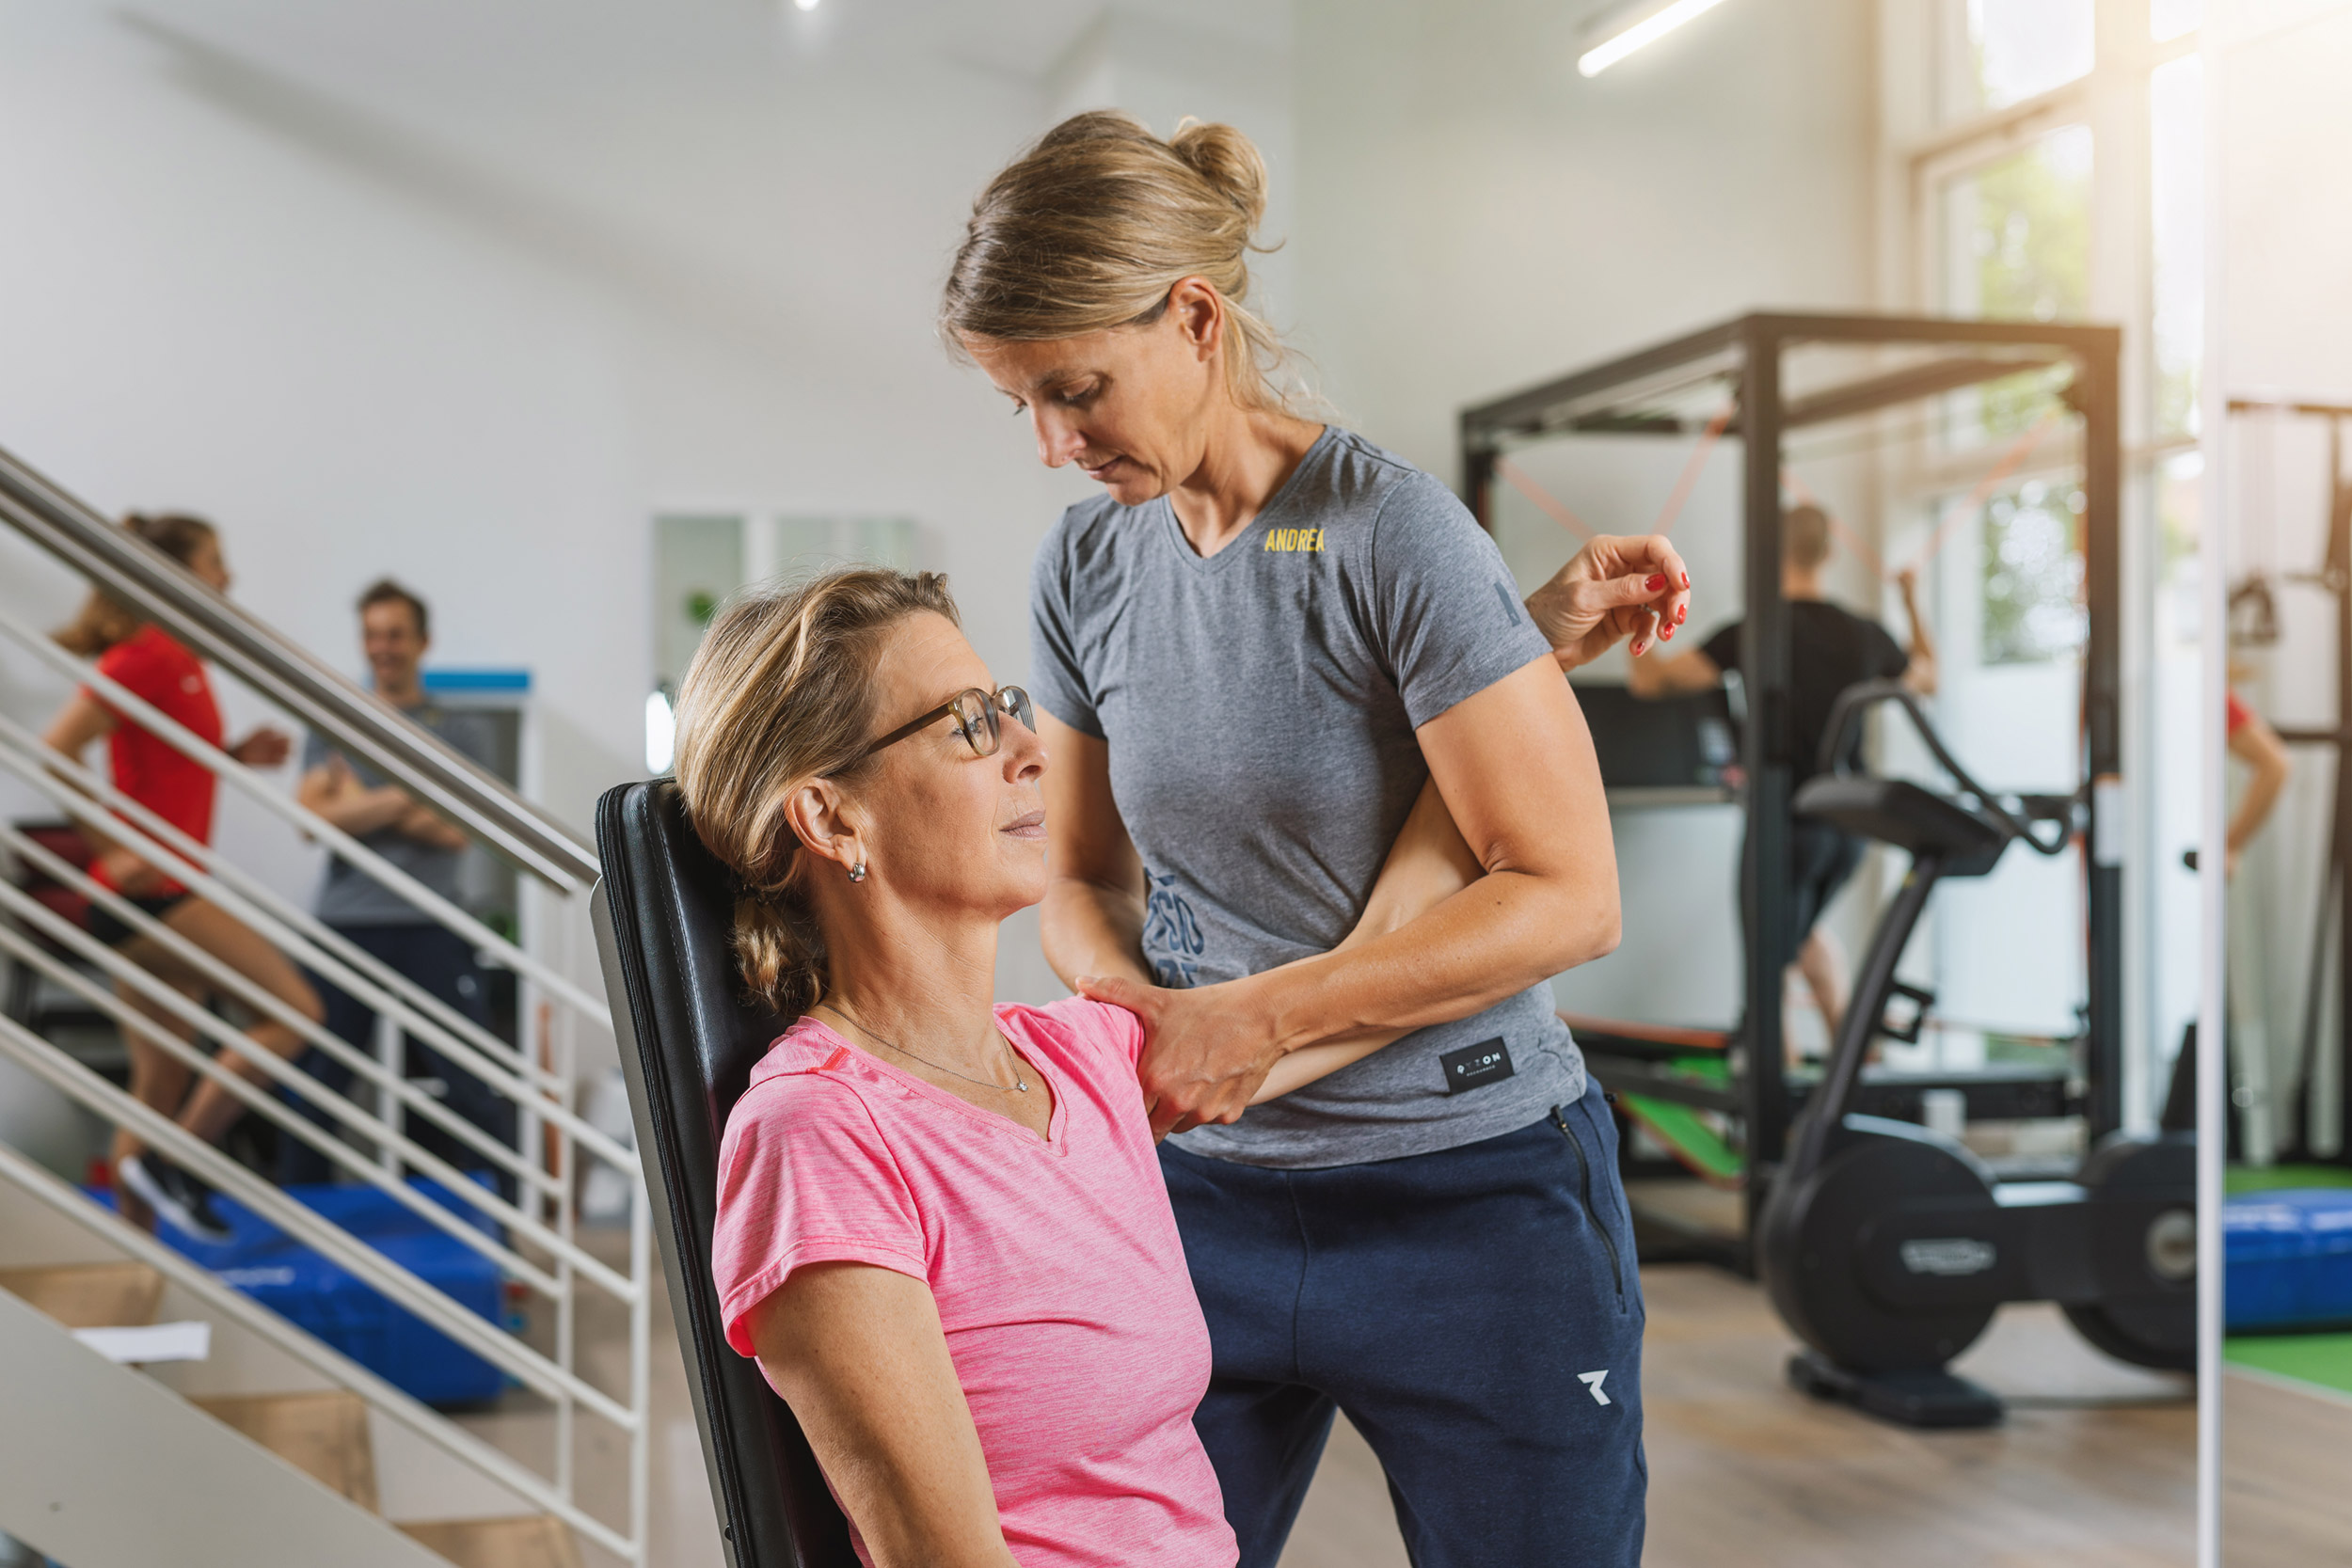 Physiotherapeutin behandelt eine Patientin an der Schulter um ihre Beweglichkeit zu verbessern. Im Hintergrund sieht man den Trainingsraum, welcher von weiteren Personen genutzt wird.